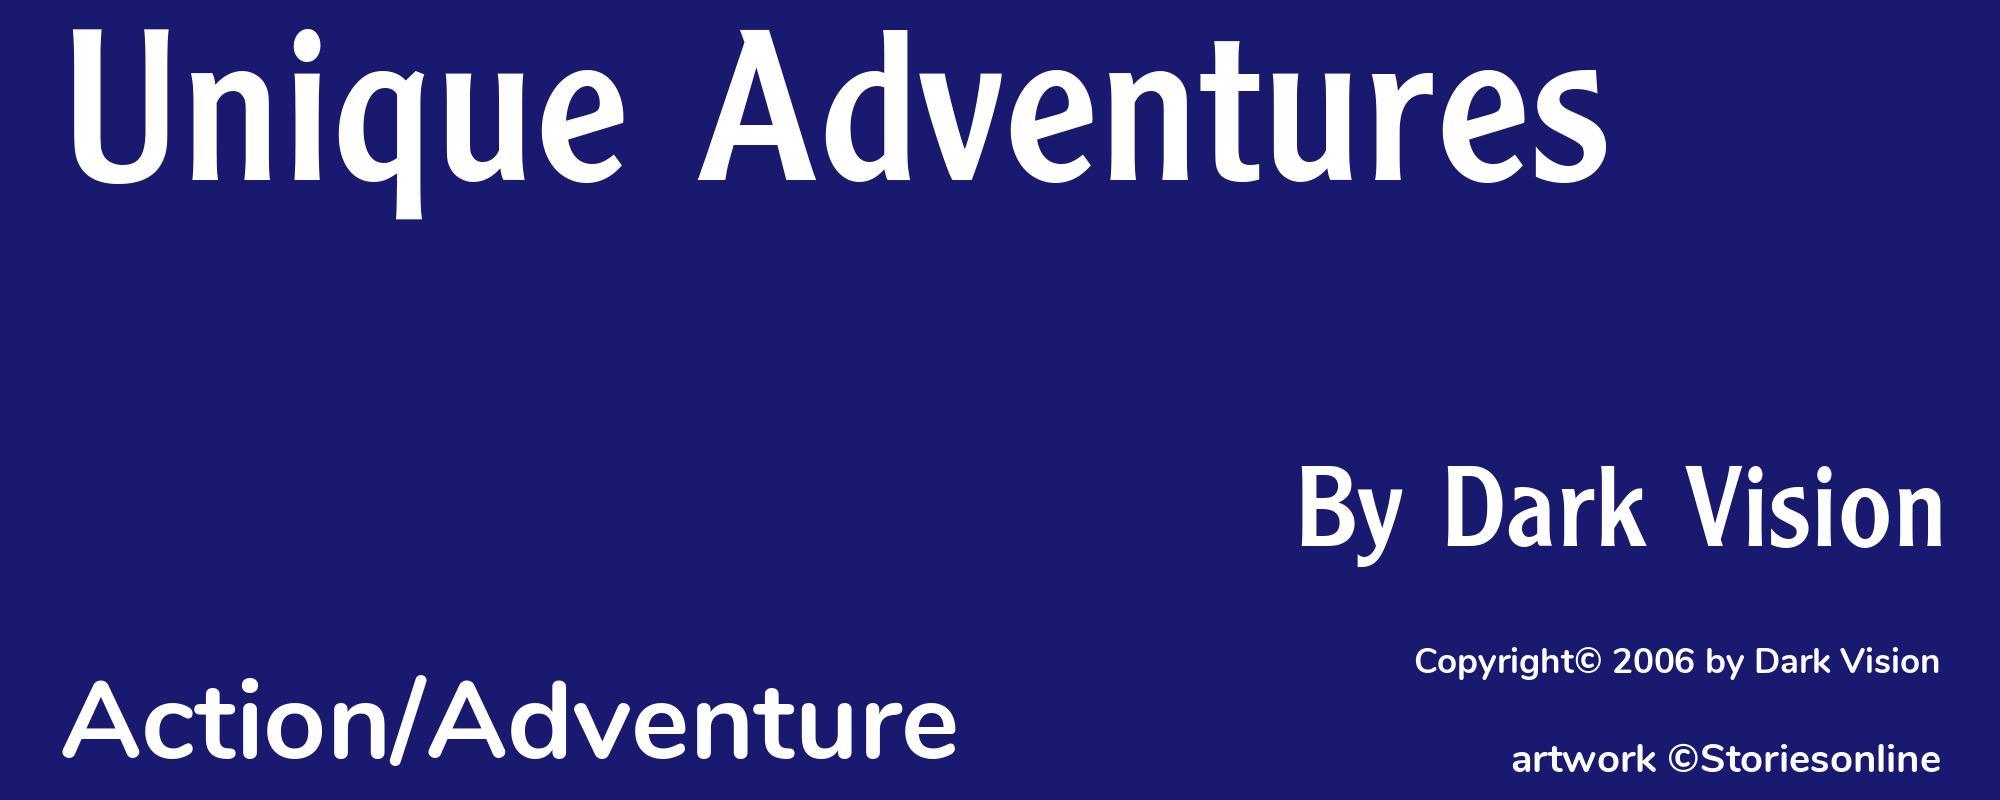 Unique Adventures - Cover